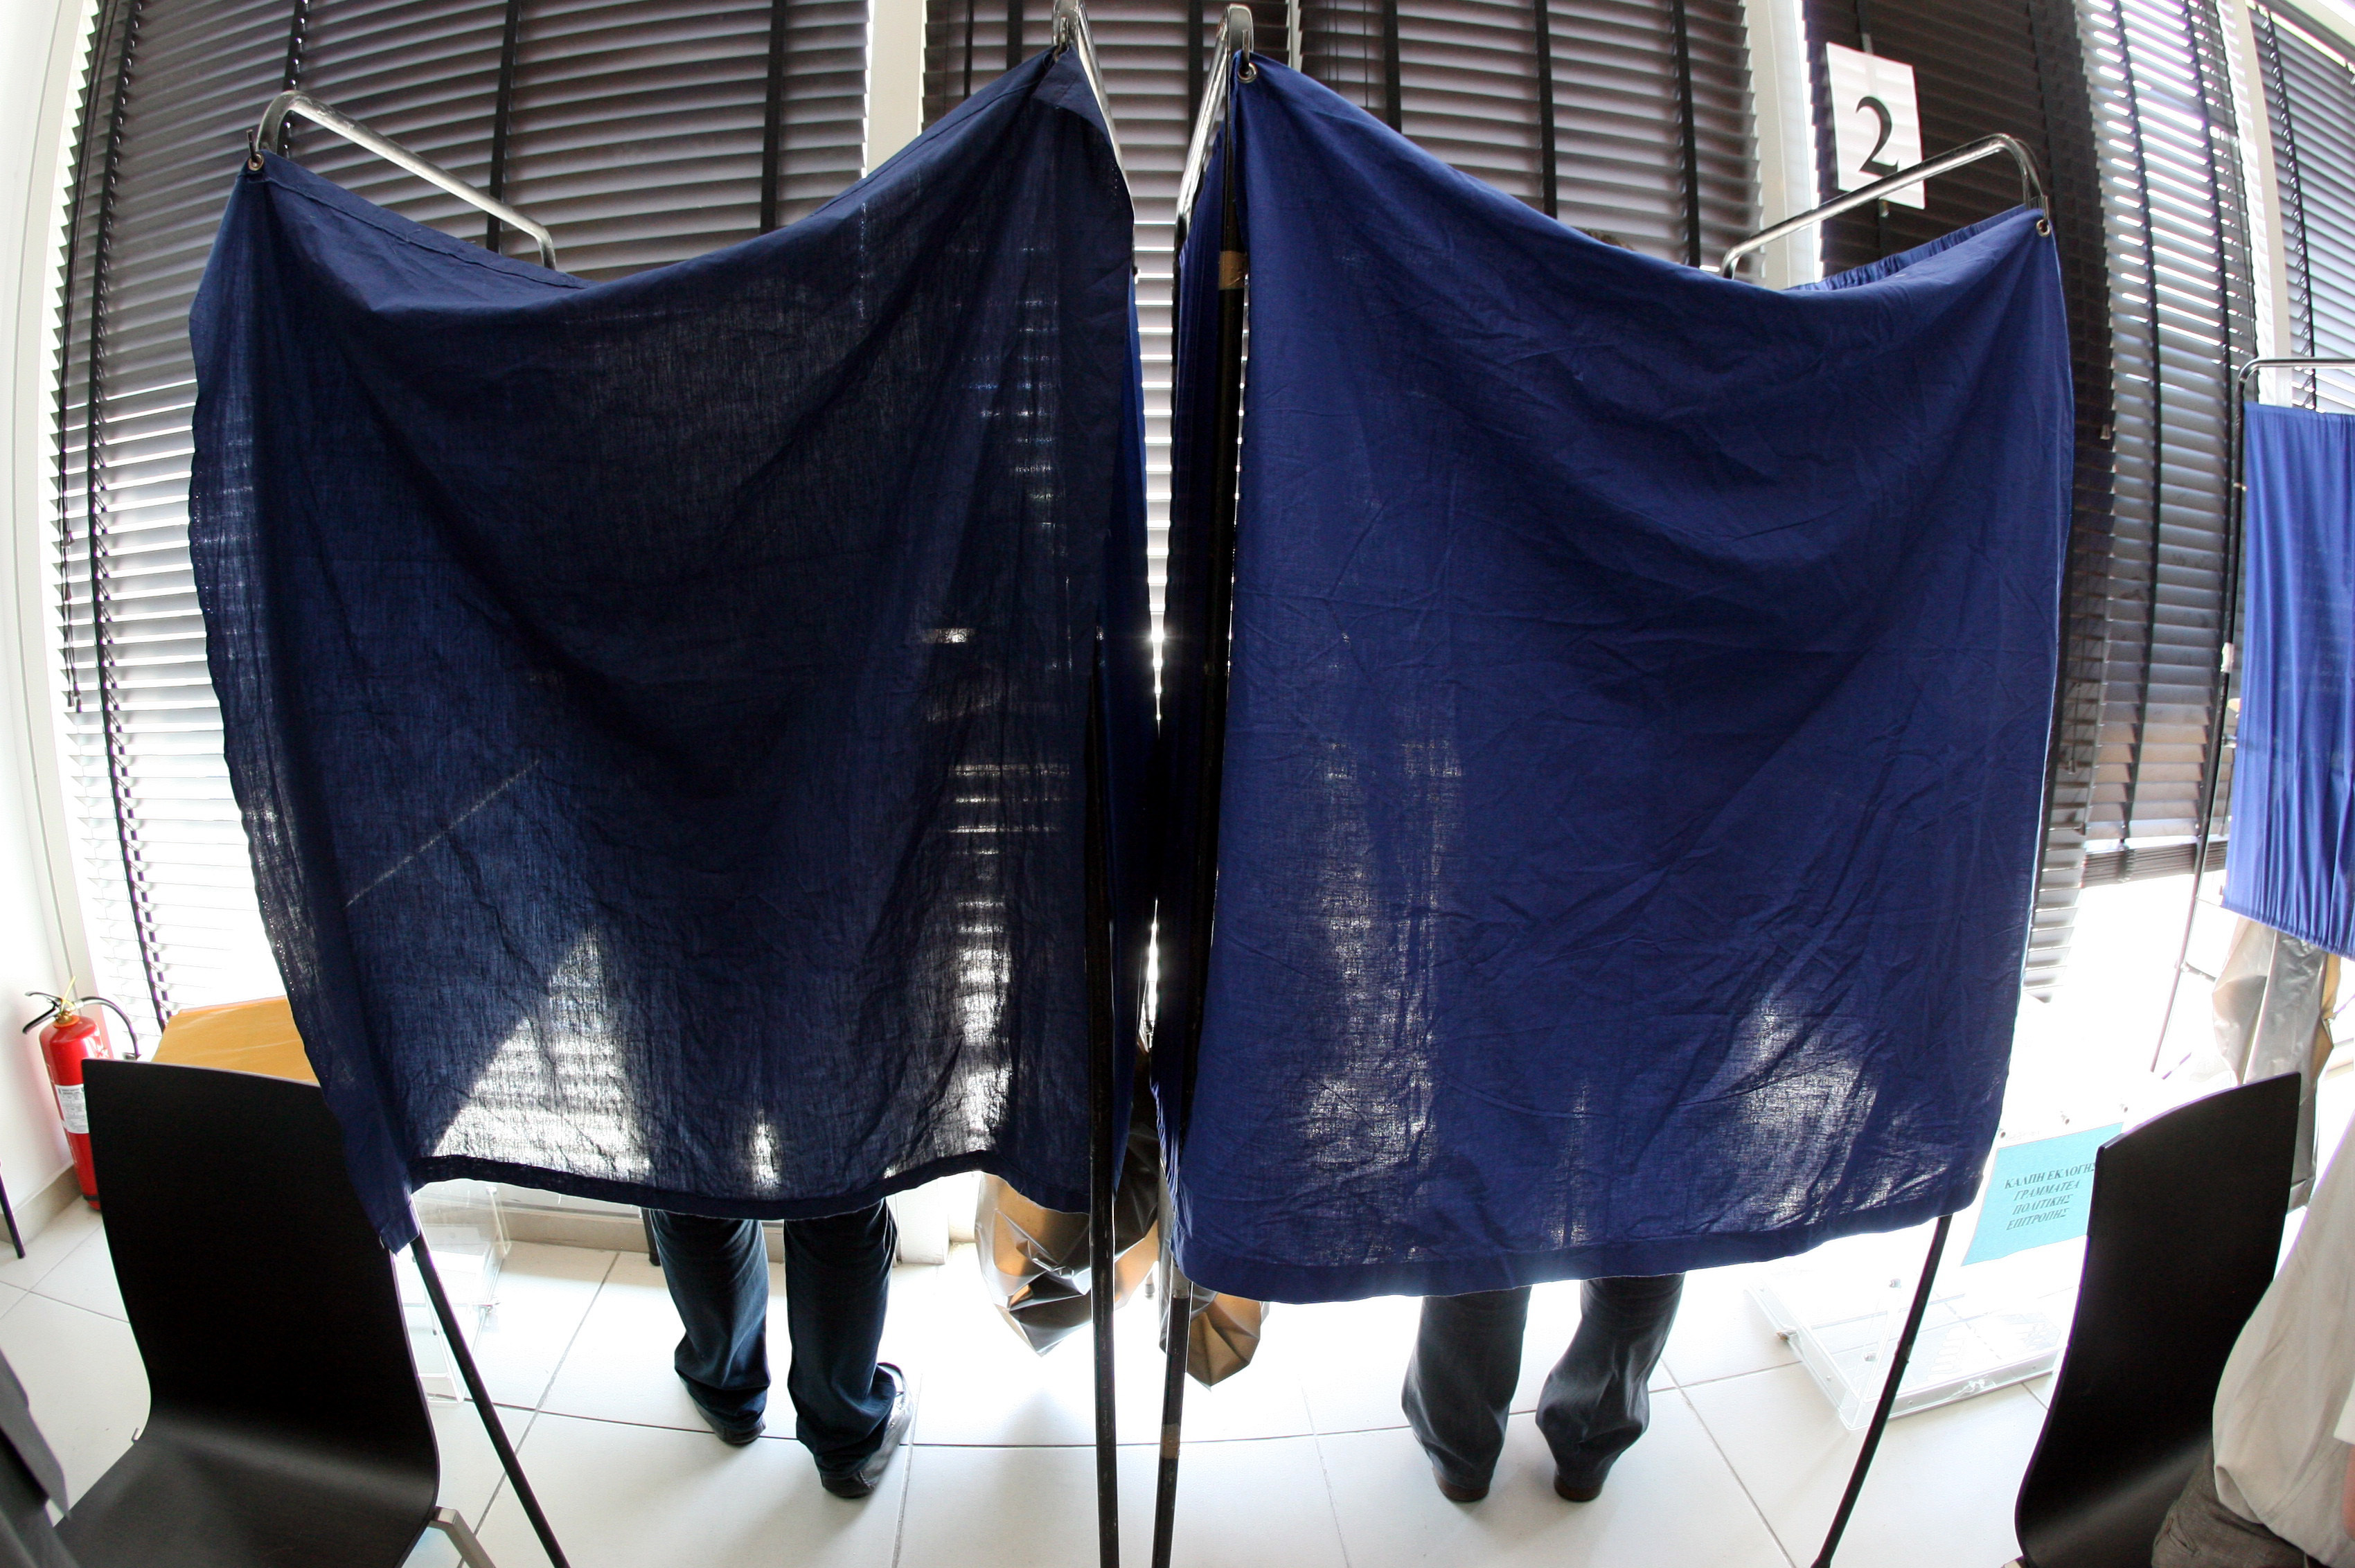 Τι θα κάνουν ΣΥΡΙΖΑ, ΠΑΣΟΚ και ΔΗΜΑΡ σε περίπτωση πρόωρων εκλογών